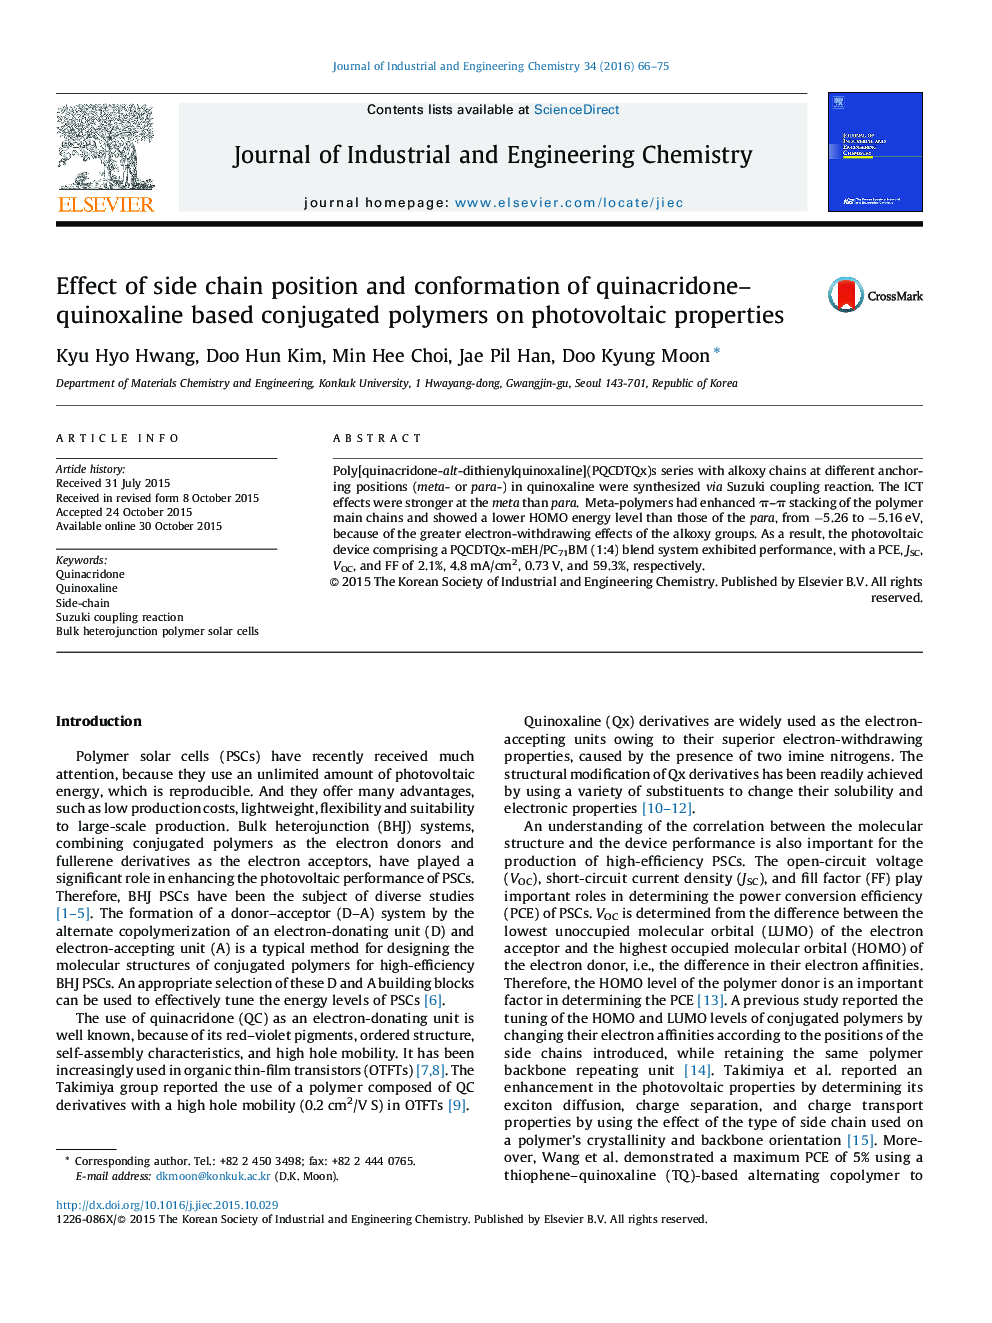 تأثیر موقعیت زنجیره جانبی و سازگاری پلیمرهای کانجیوژن مبتنی بر کینیکاردونا کینوکسیلین بر خواص فتوولتائیک 